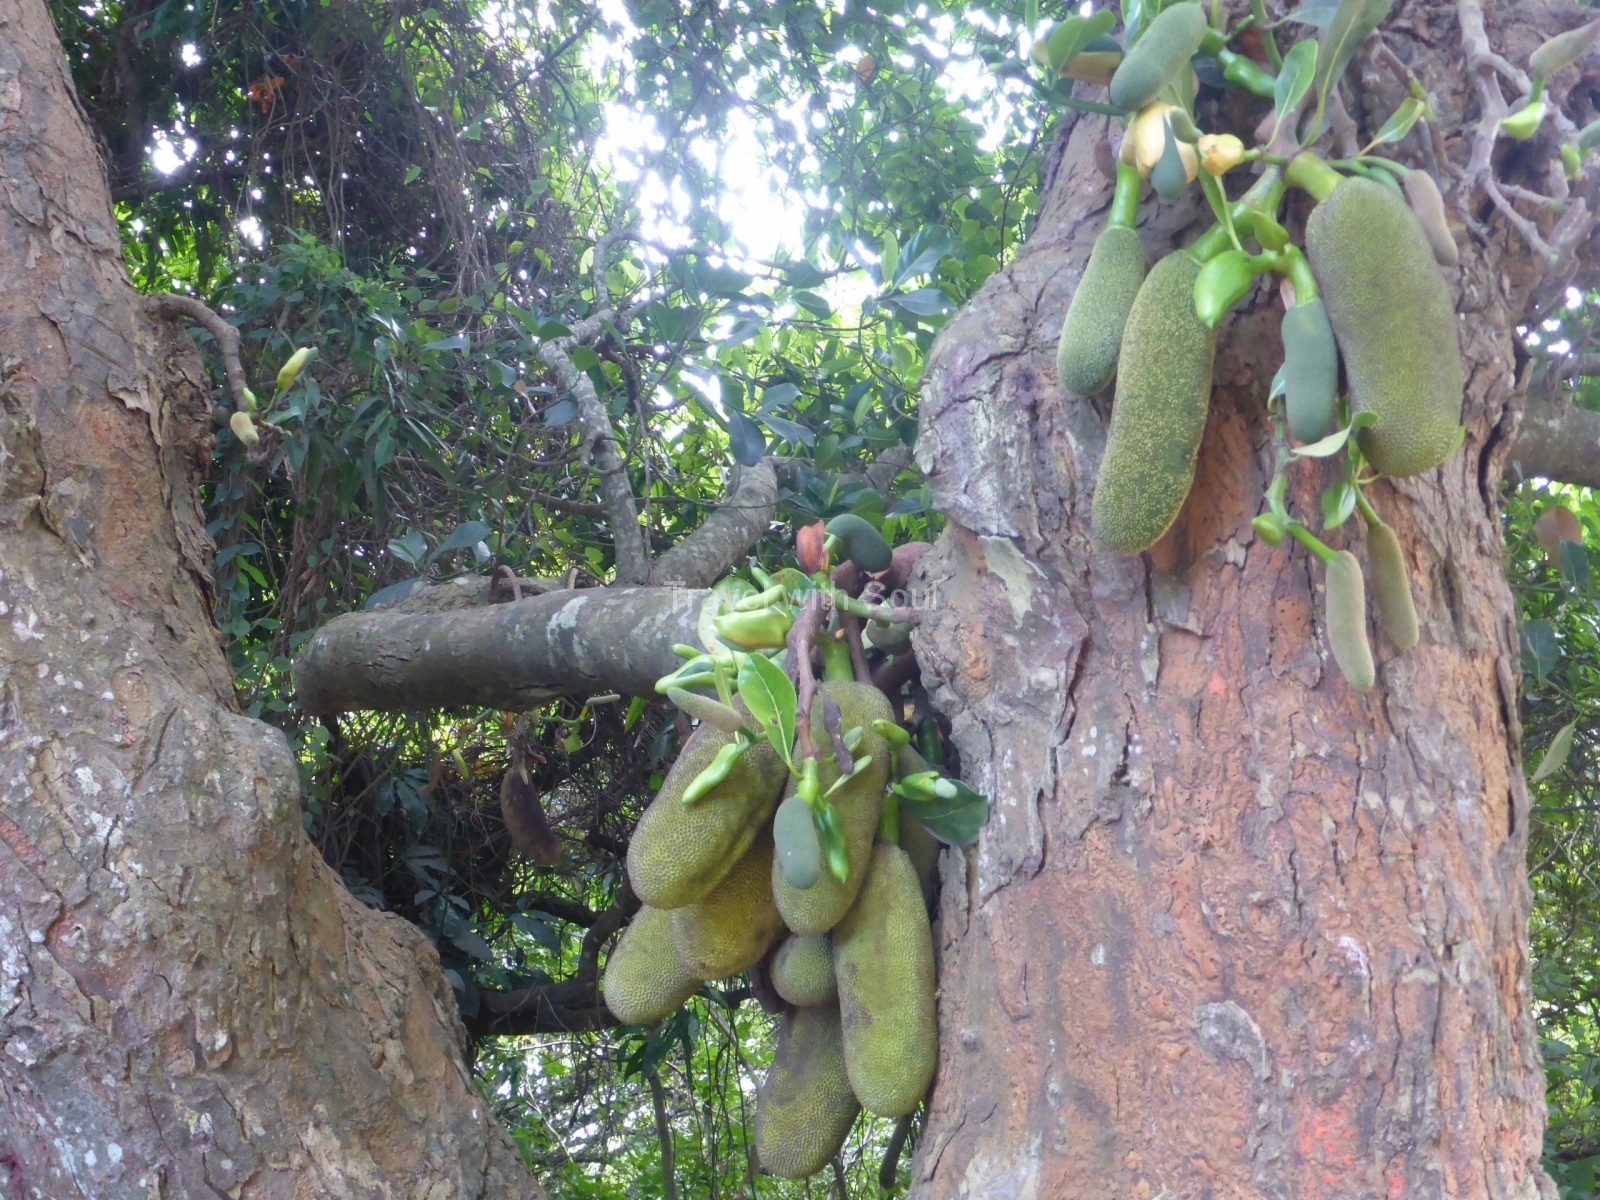 Jackfruchtbaum (Artocarpus heterophyllus) auch Stinkfrucht genannt